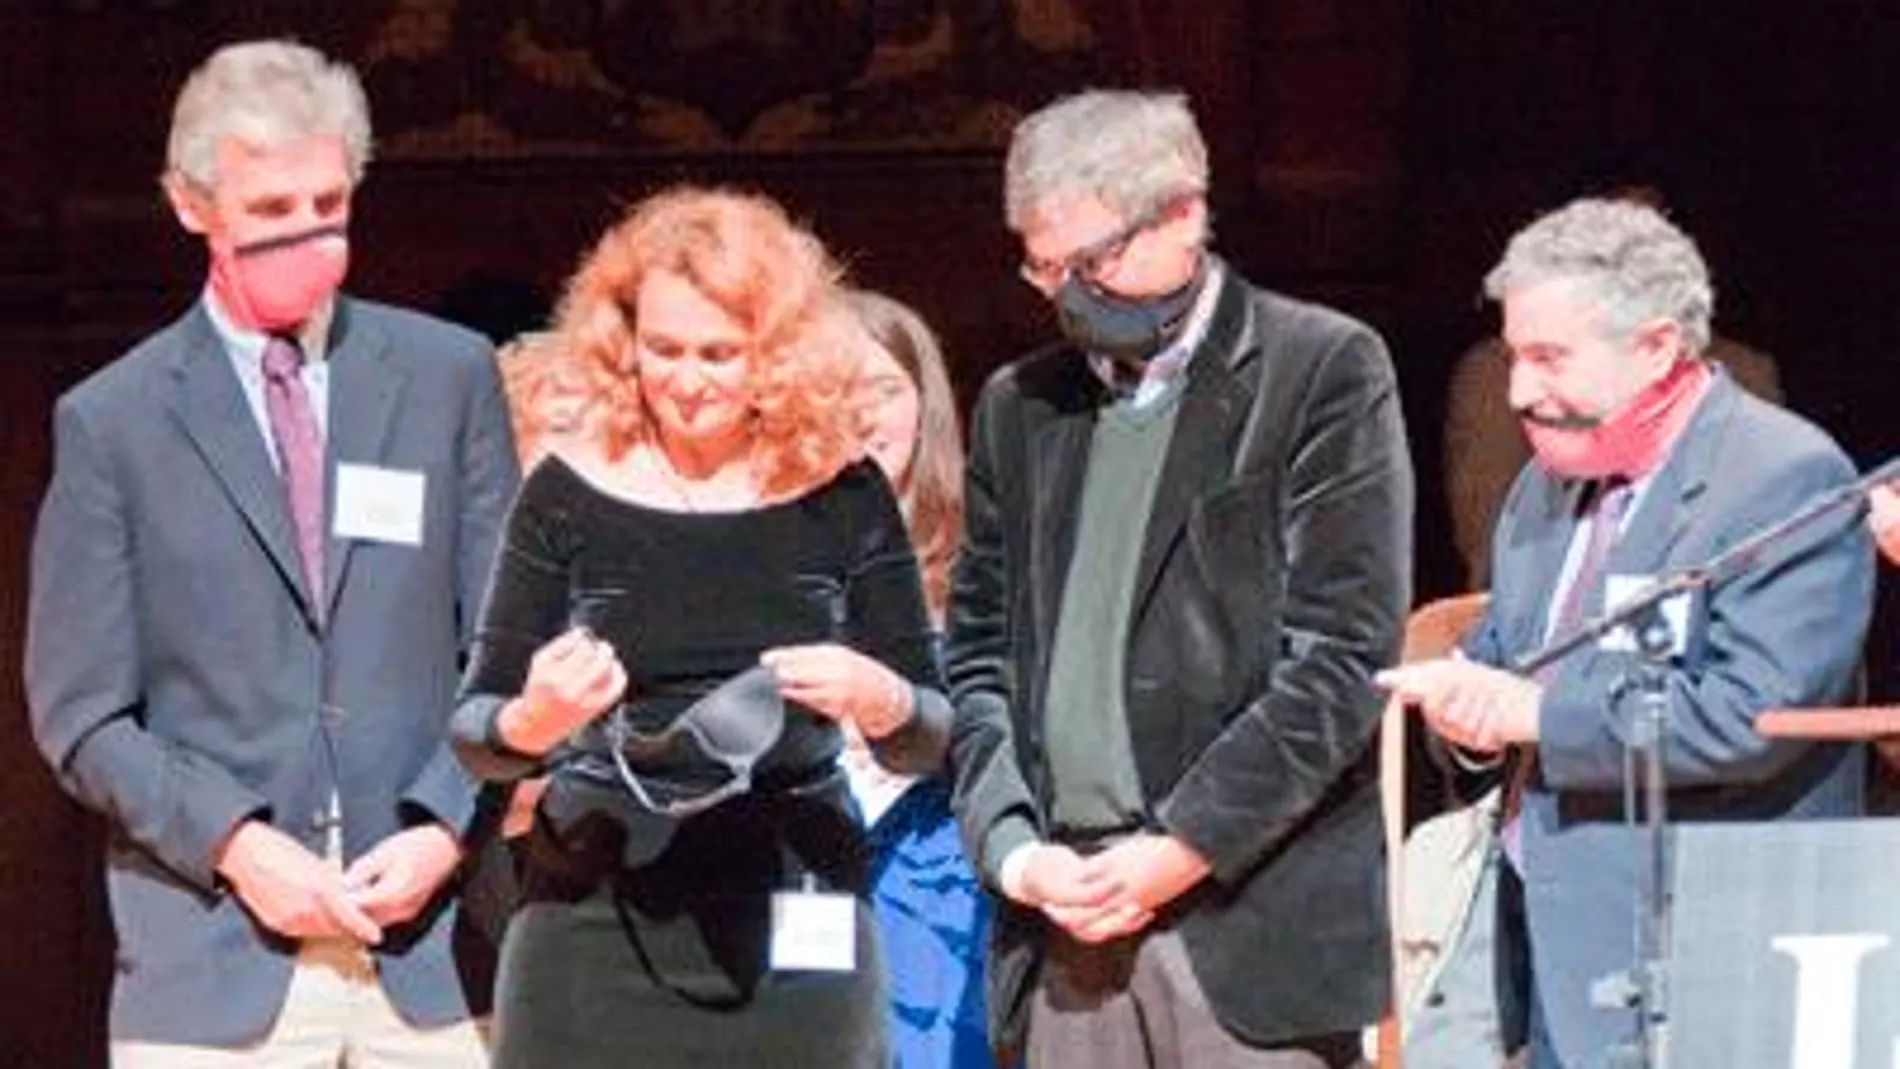 La ganadora del Premio Nobel Ig Dra. Elena Bodnar demuestra su invento (un sujetador que se puede convertir rápidamente en un par de máscaras protectoras ) con la ayuda de los premios Nobel Wolfgang Ketterle (izquierda), Orhan Pamuk y Paul Krugman (derecha), en la ceremonia de 2009